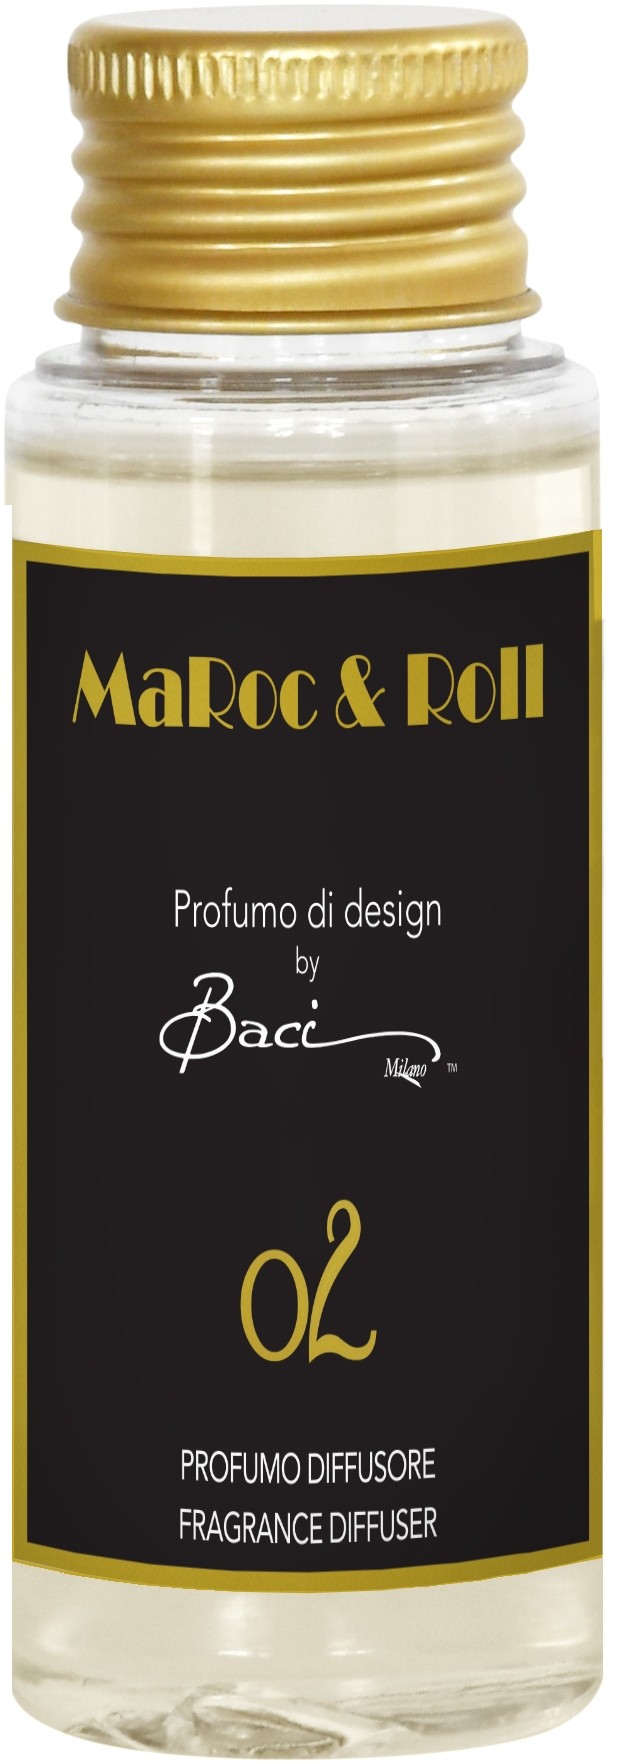 Fragranza Diffusore 50 ml MaRoc & Roll 02 REF50.02